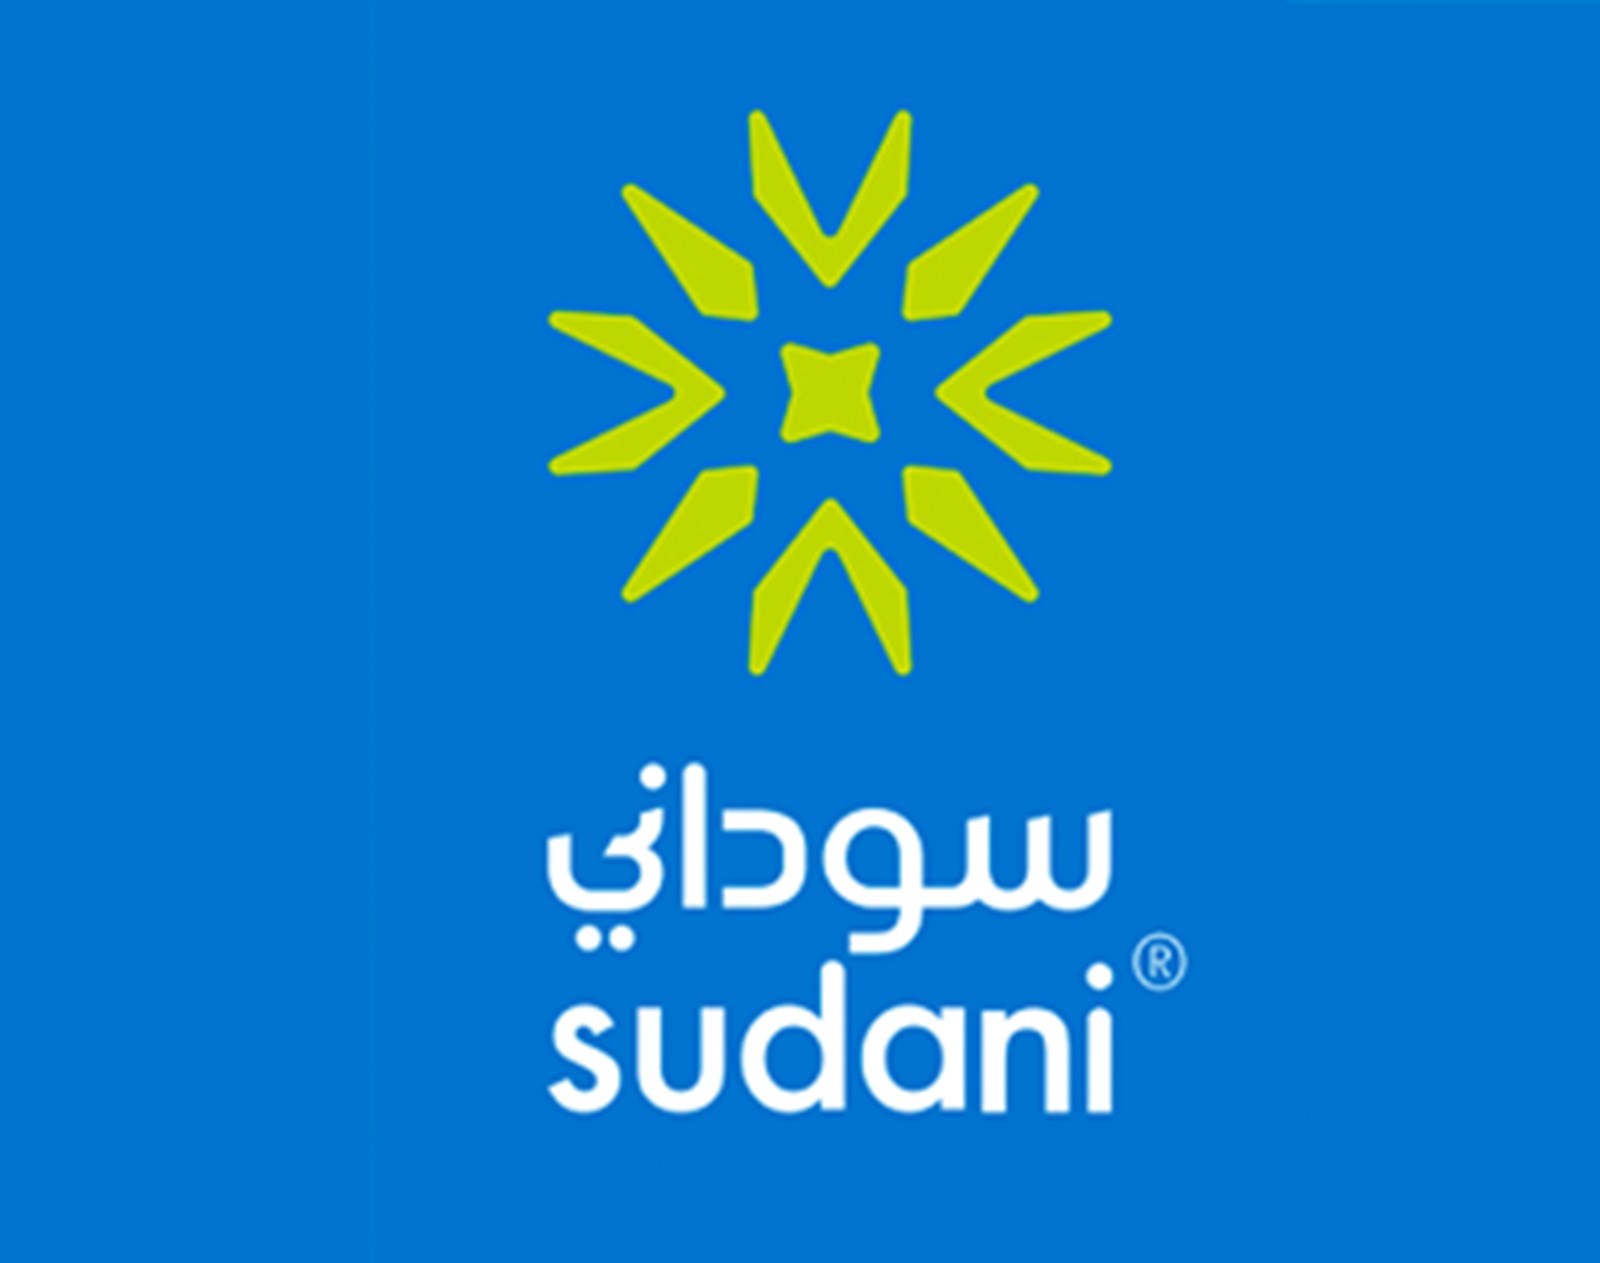 Sudani